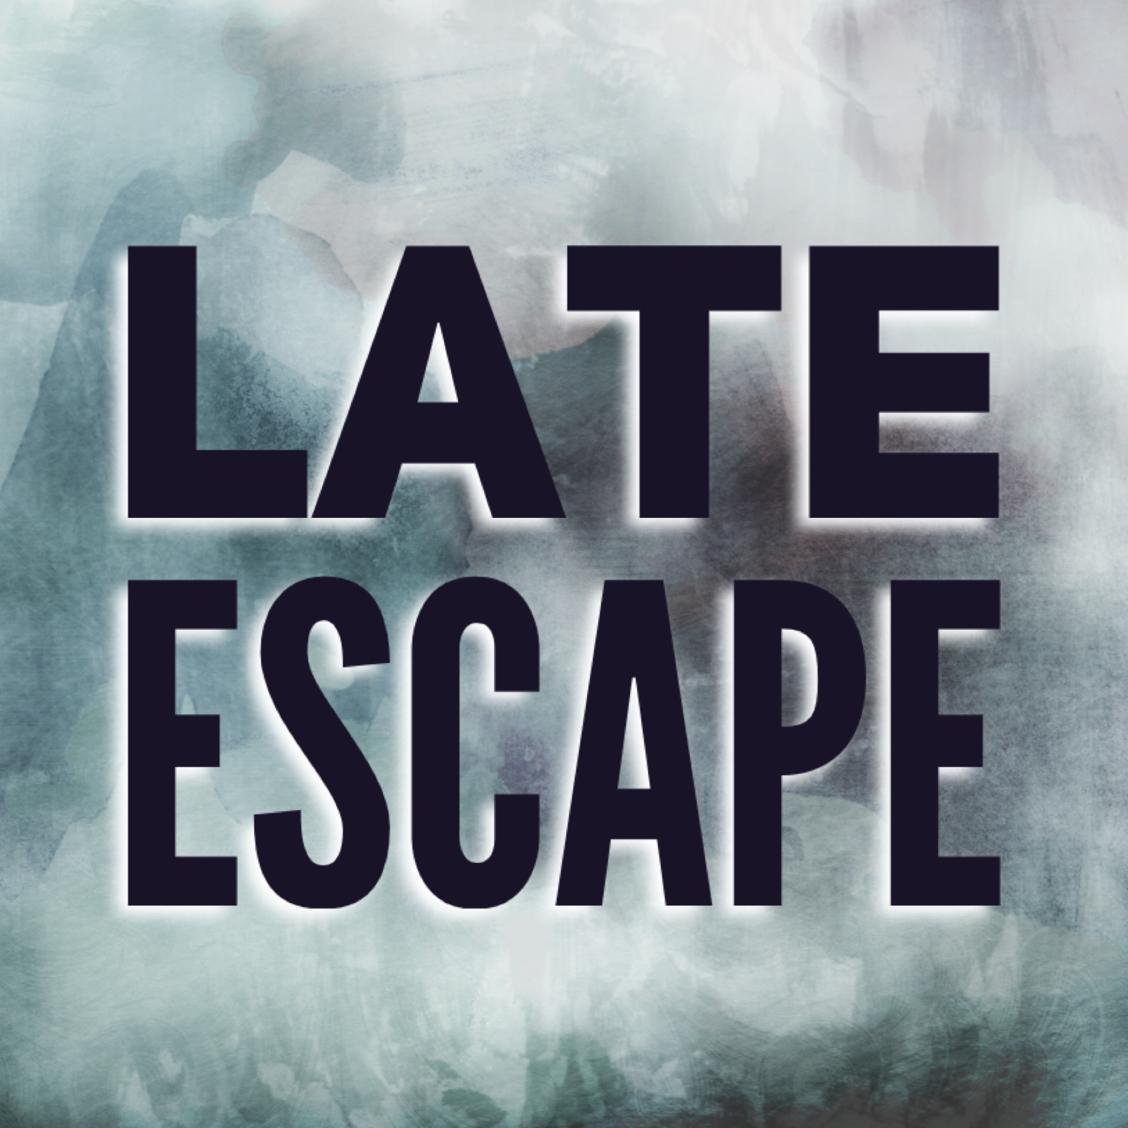 Late Escape's images